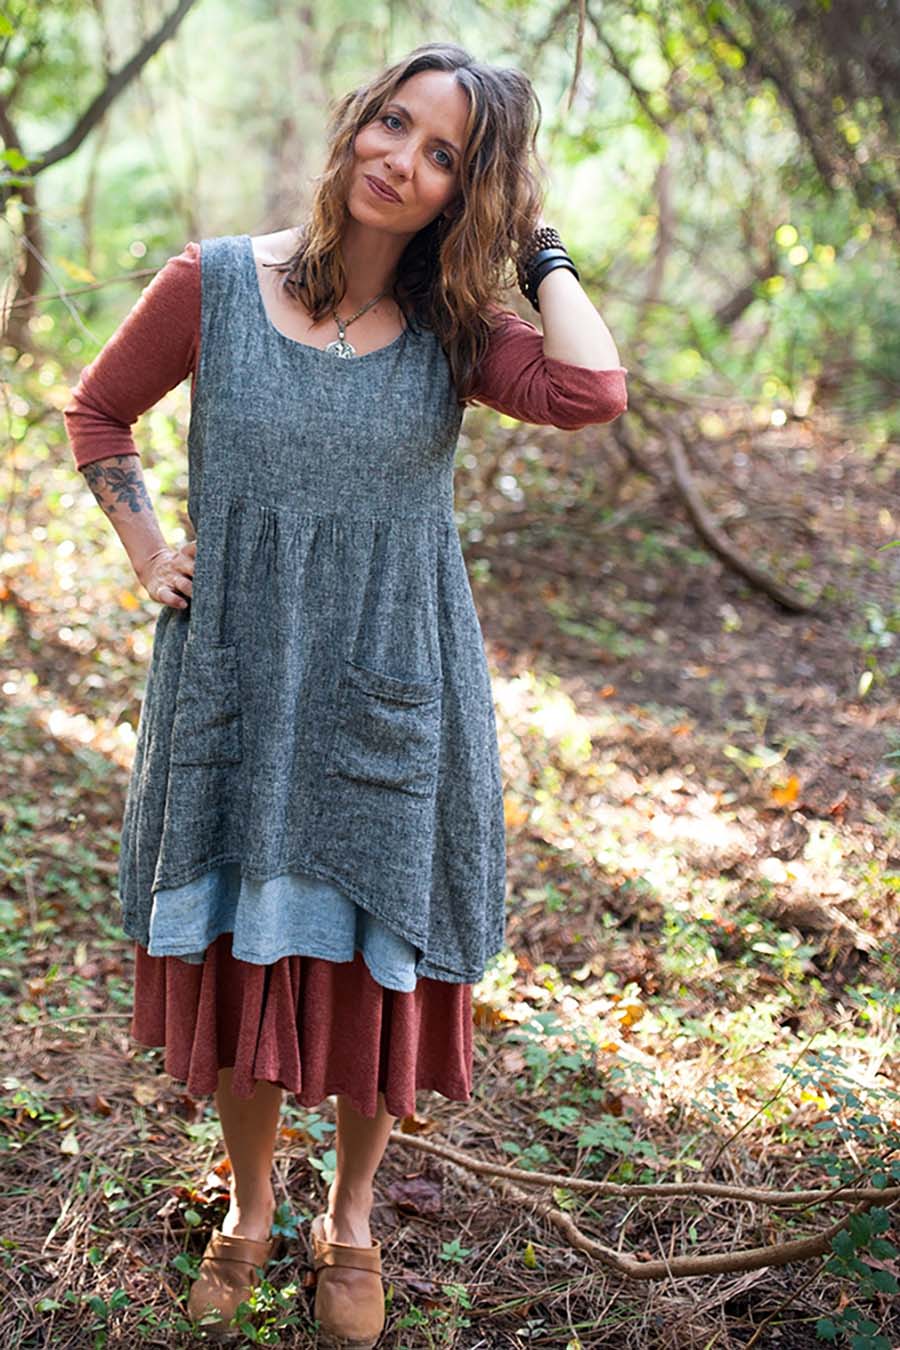 Meg wears a metamoprhic dress in the woods